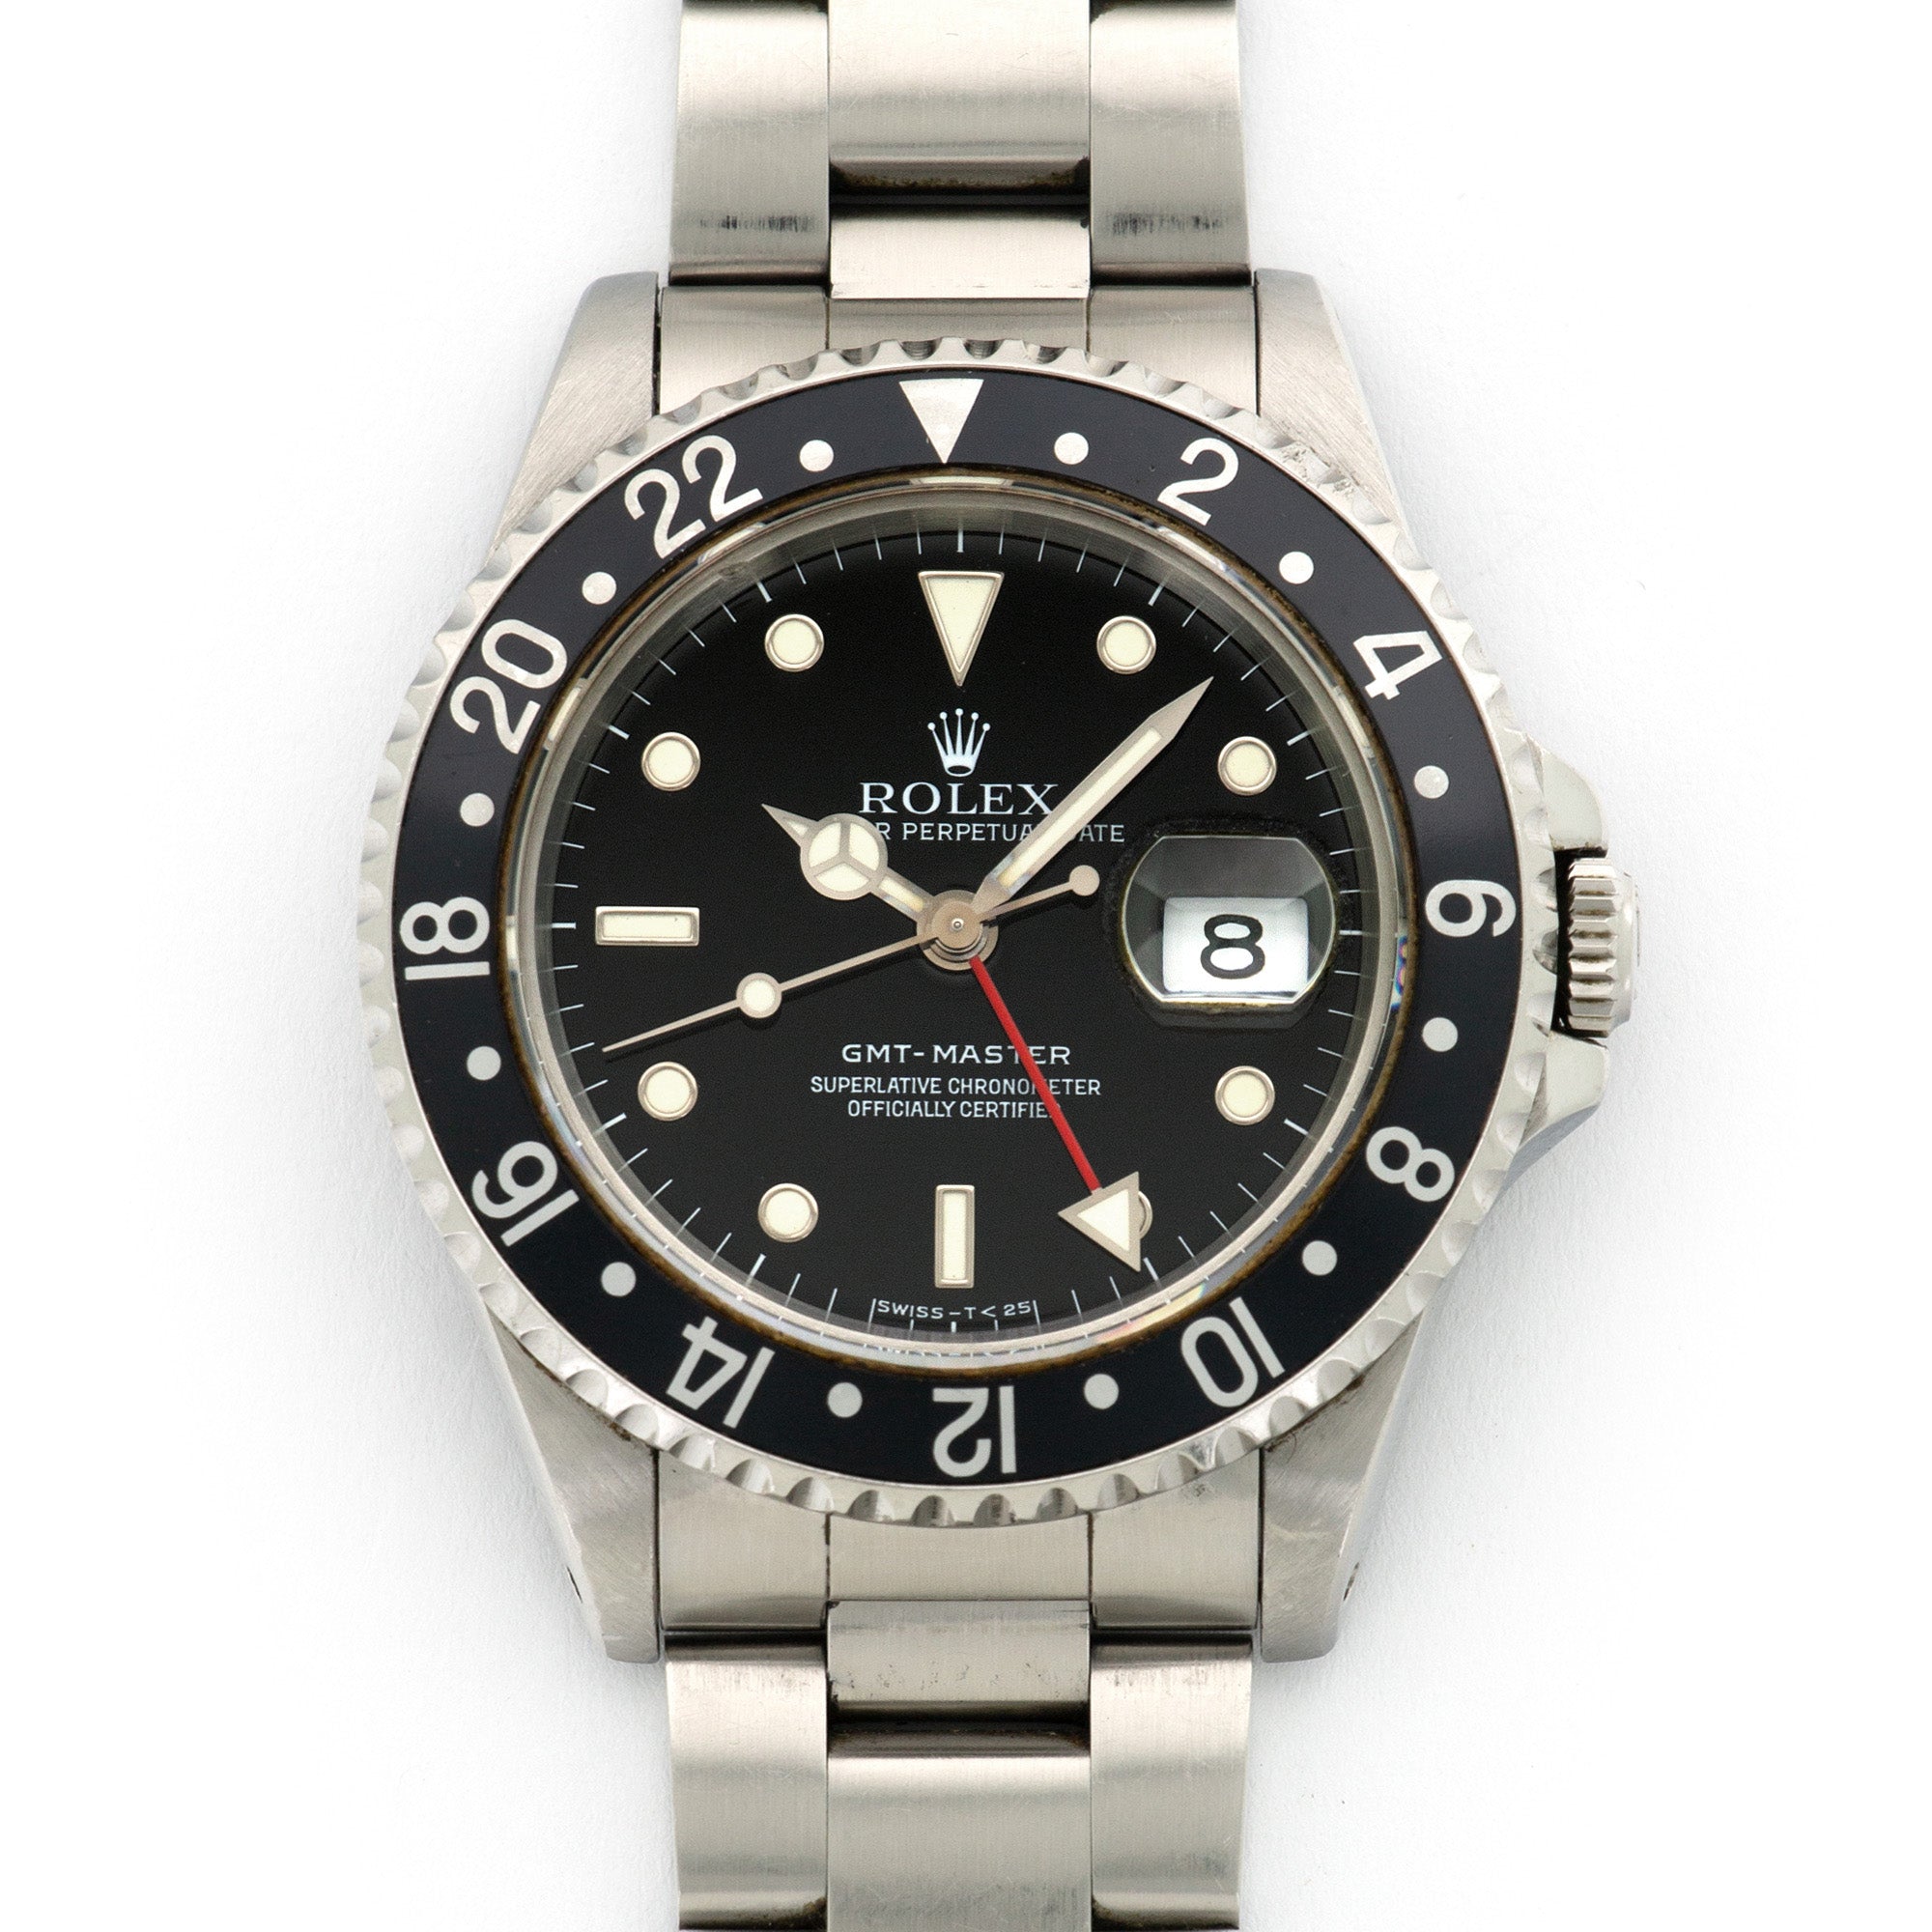 Rolex - Rolex GMT-Master Watch Ref. 16700 - The Keystone Watches